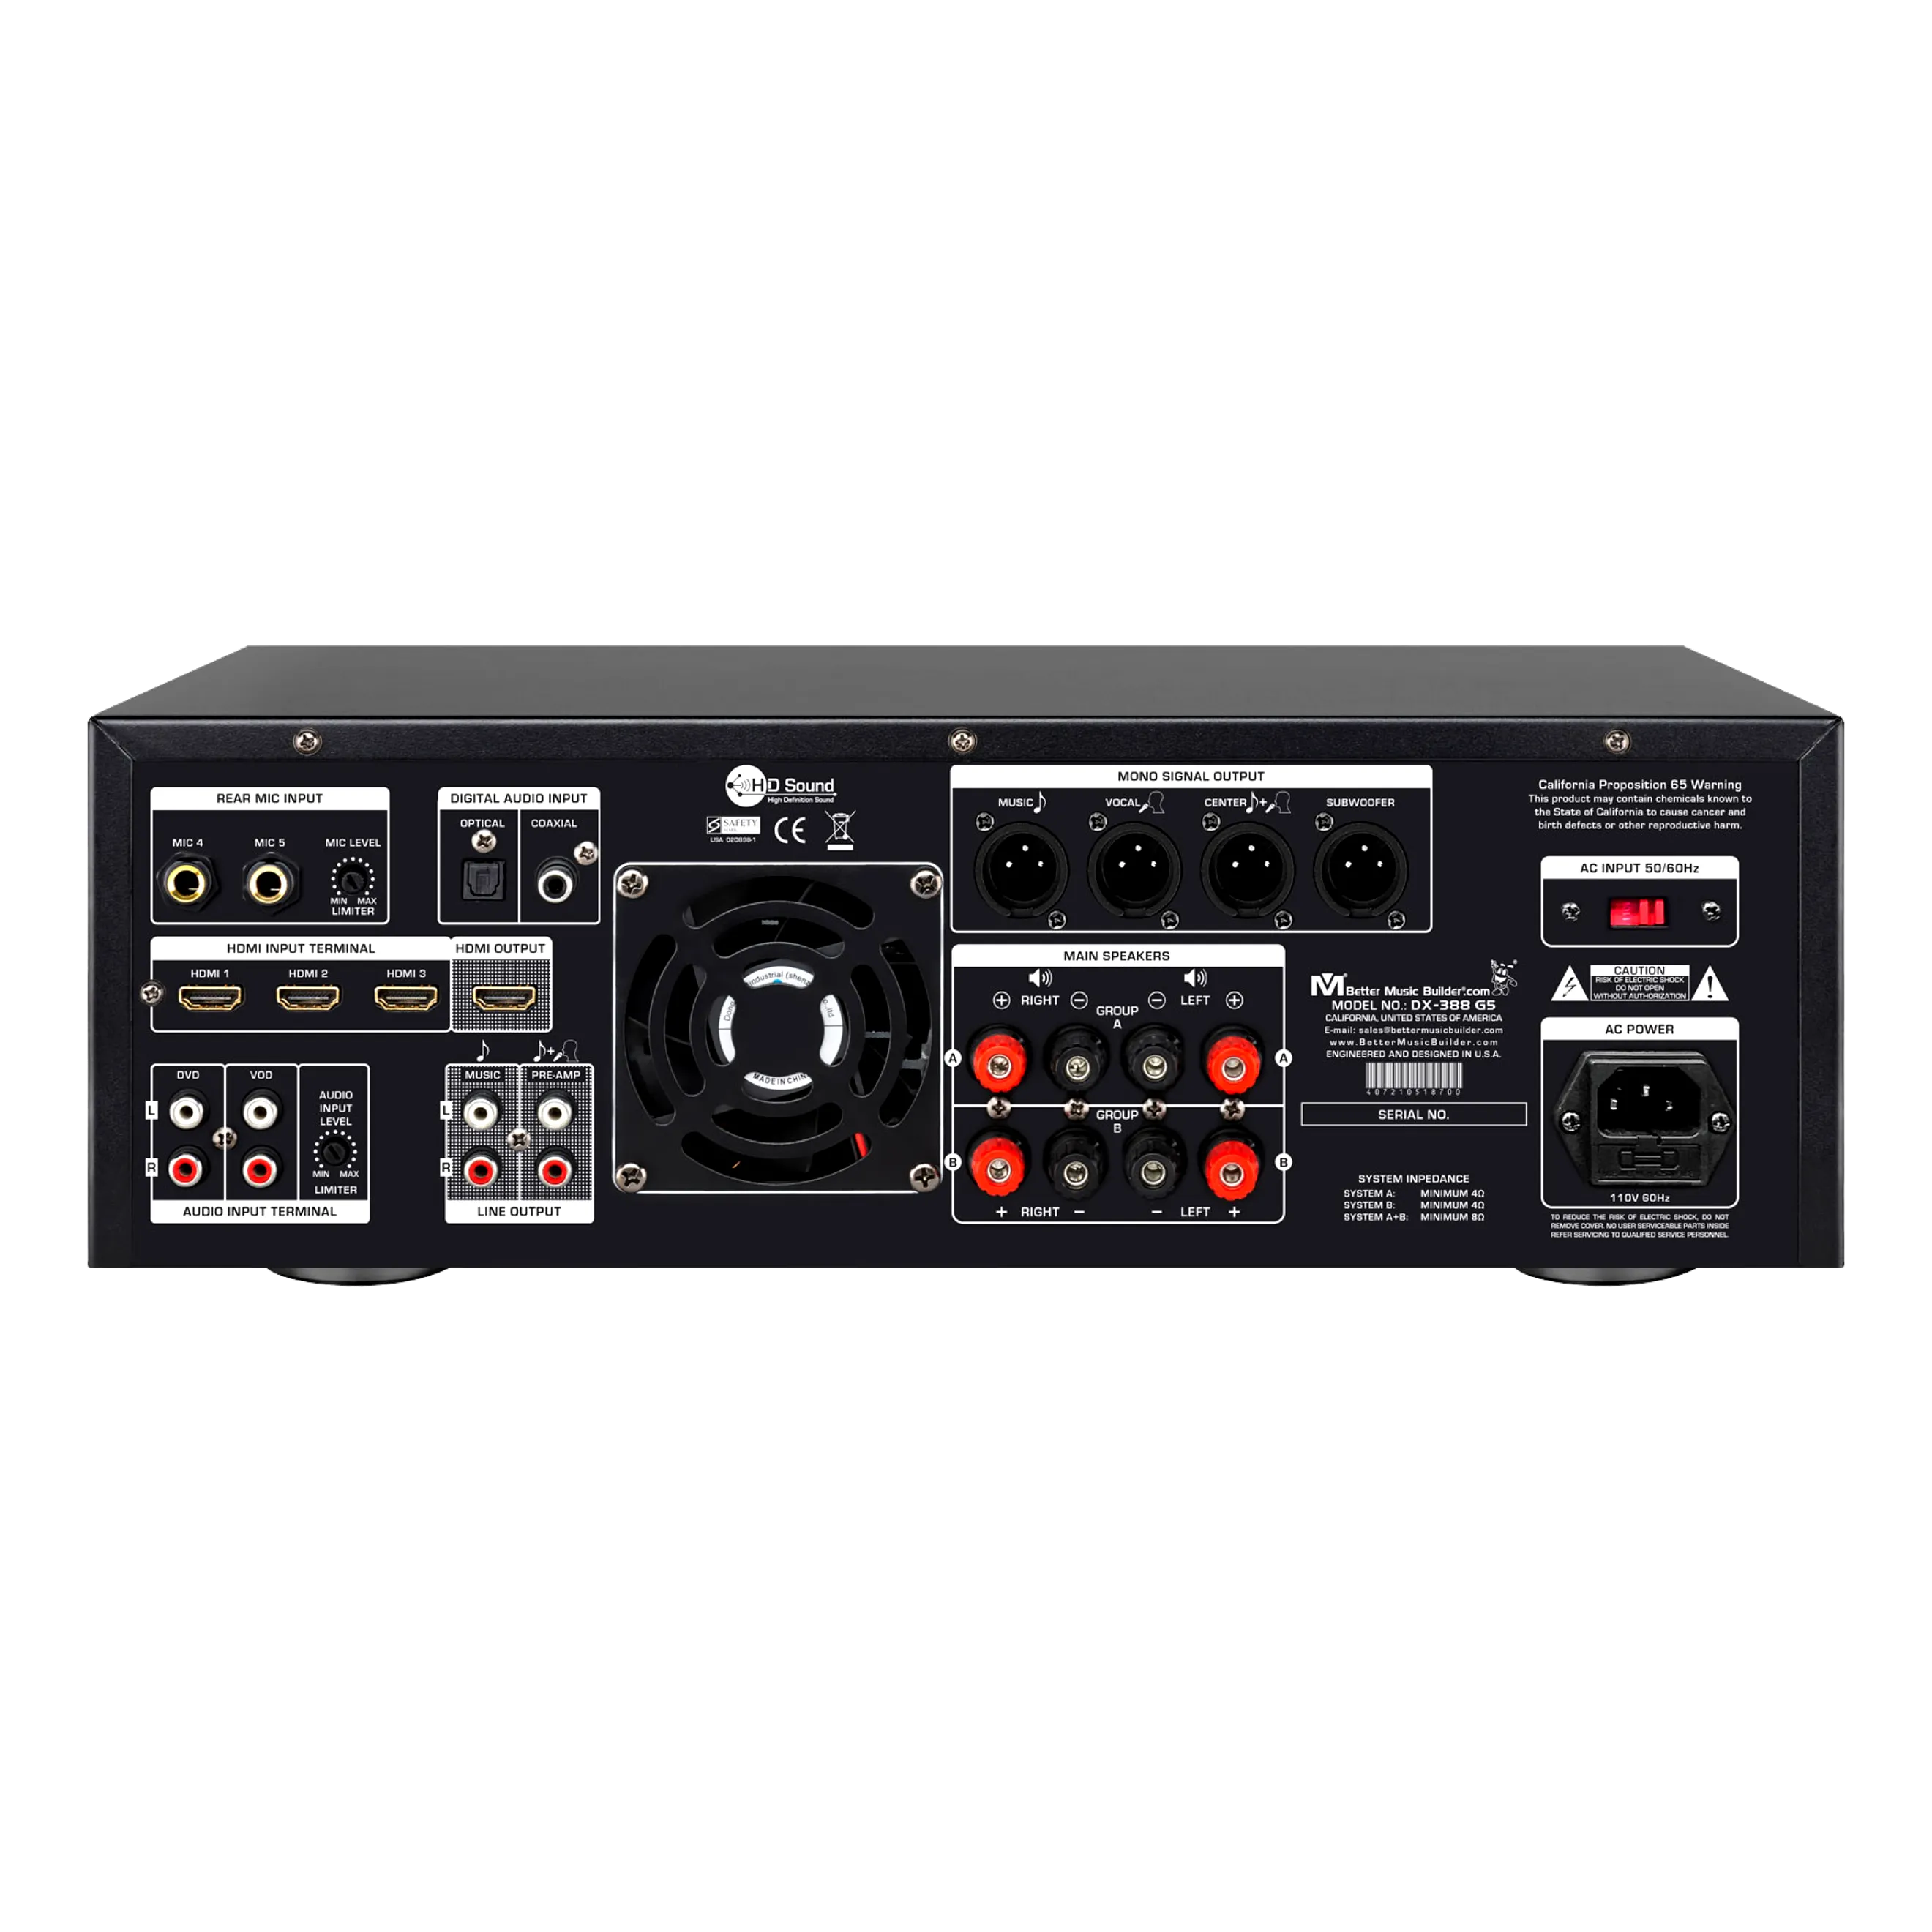 Bộ khuếch đại kết hợp Karaoke DX-388 G5 1400W của Better Music Builder